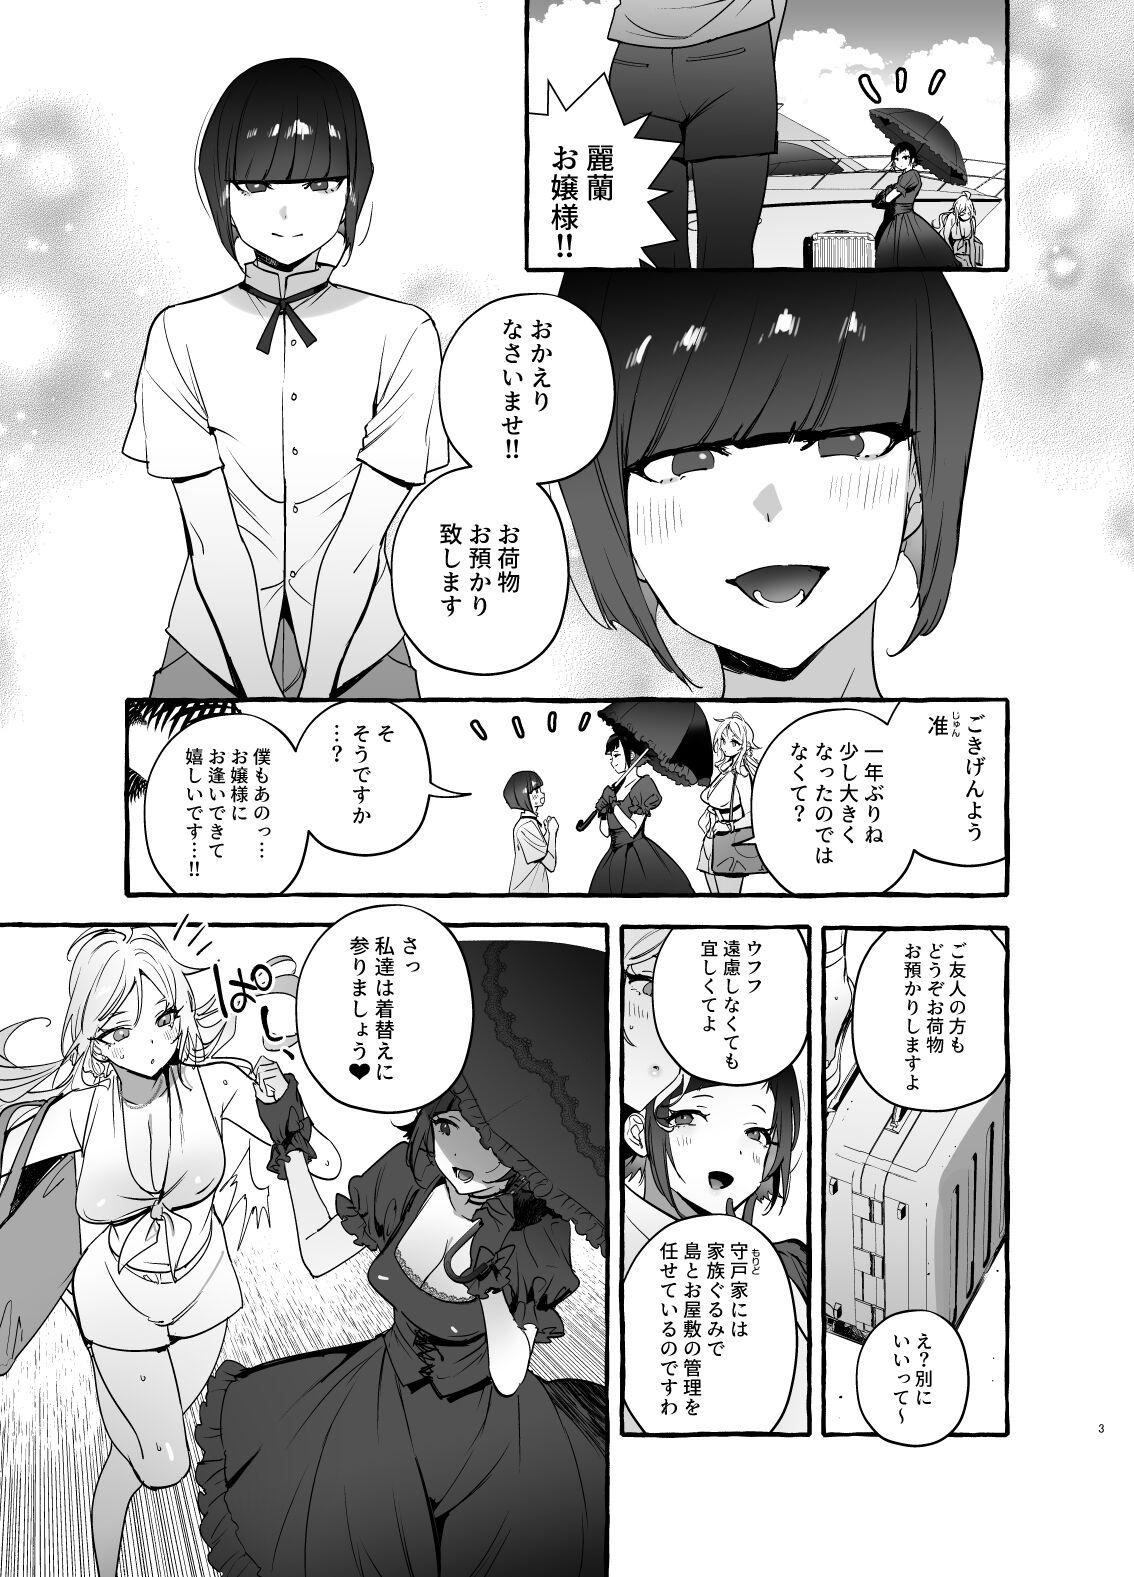 Dominant フタナリさんとノンケさん♀バカンス編 - Original Step Fantasy - Page 4